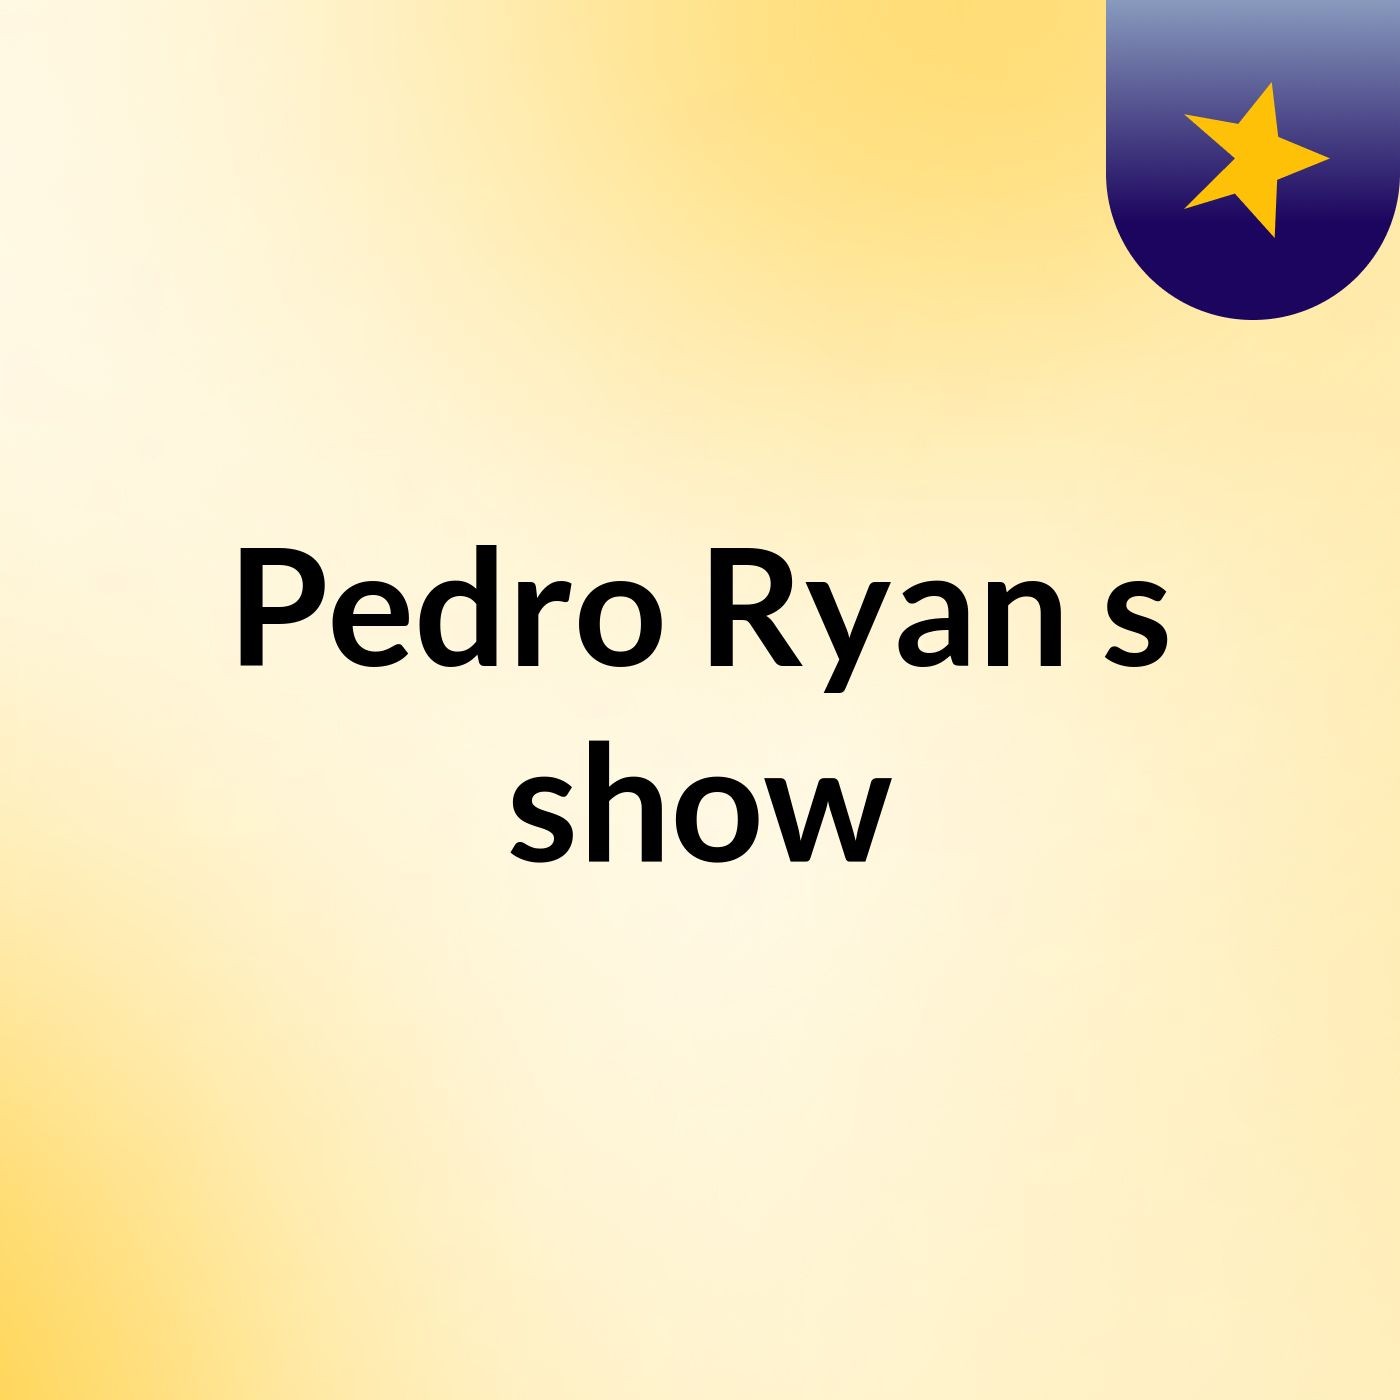 Pedro Ryan's show